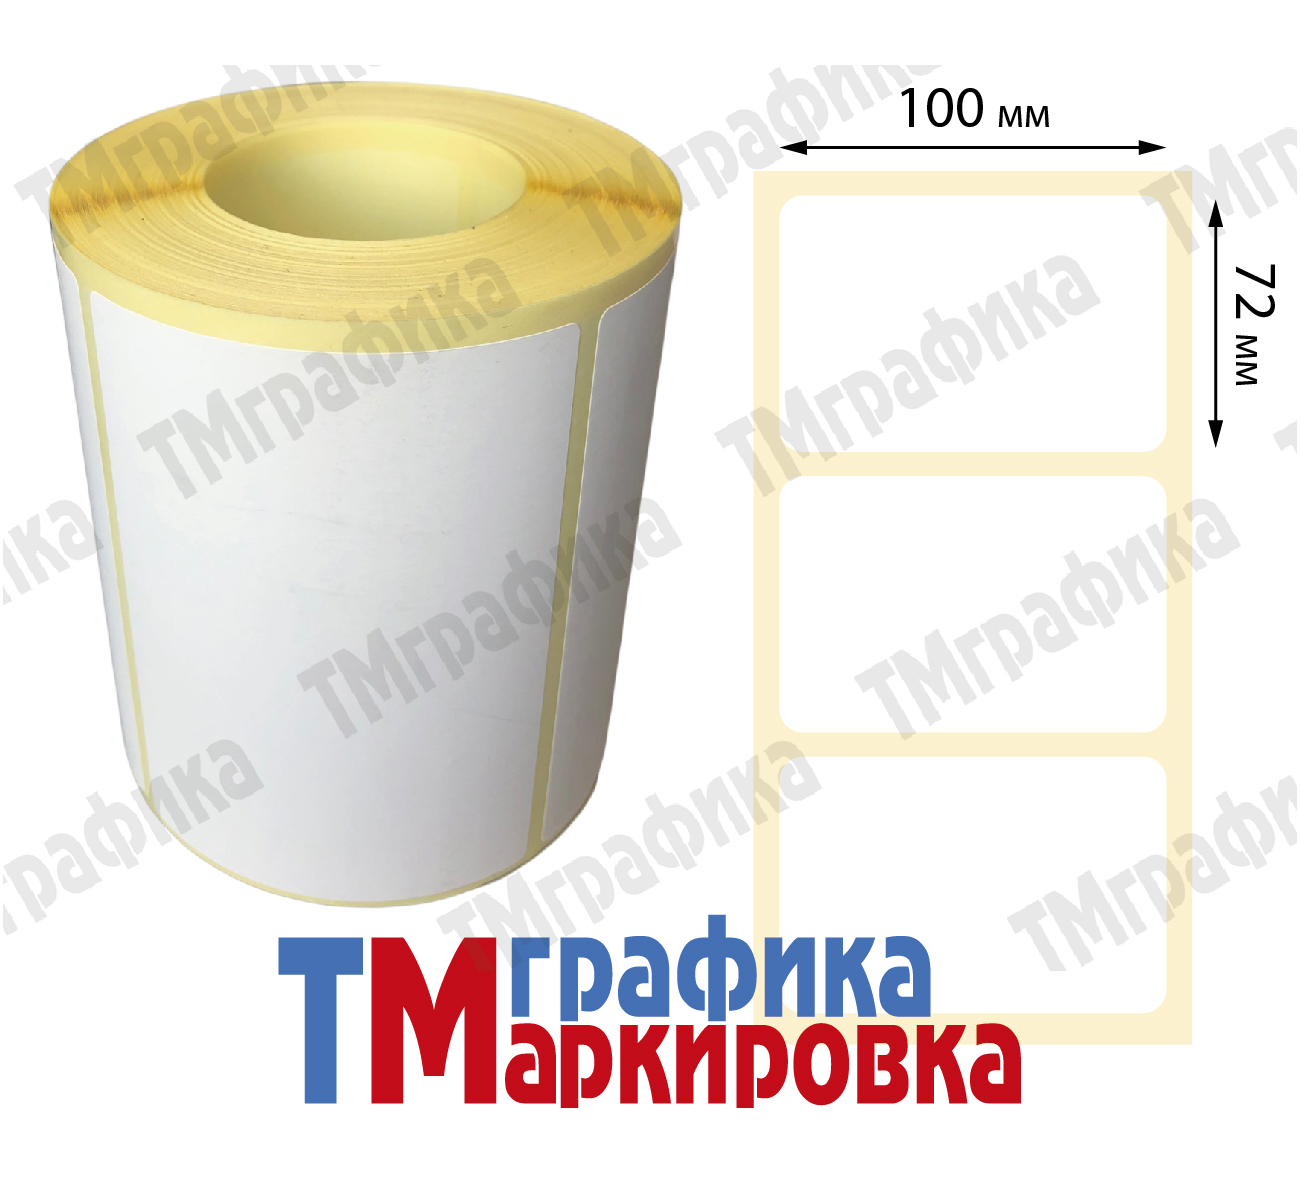 100х72 мм 500 шт. полипропиленовые Термотрансферные этикетки - 704.00 руб.